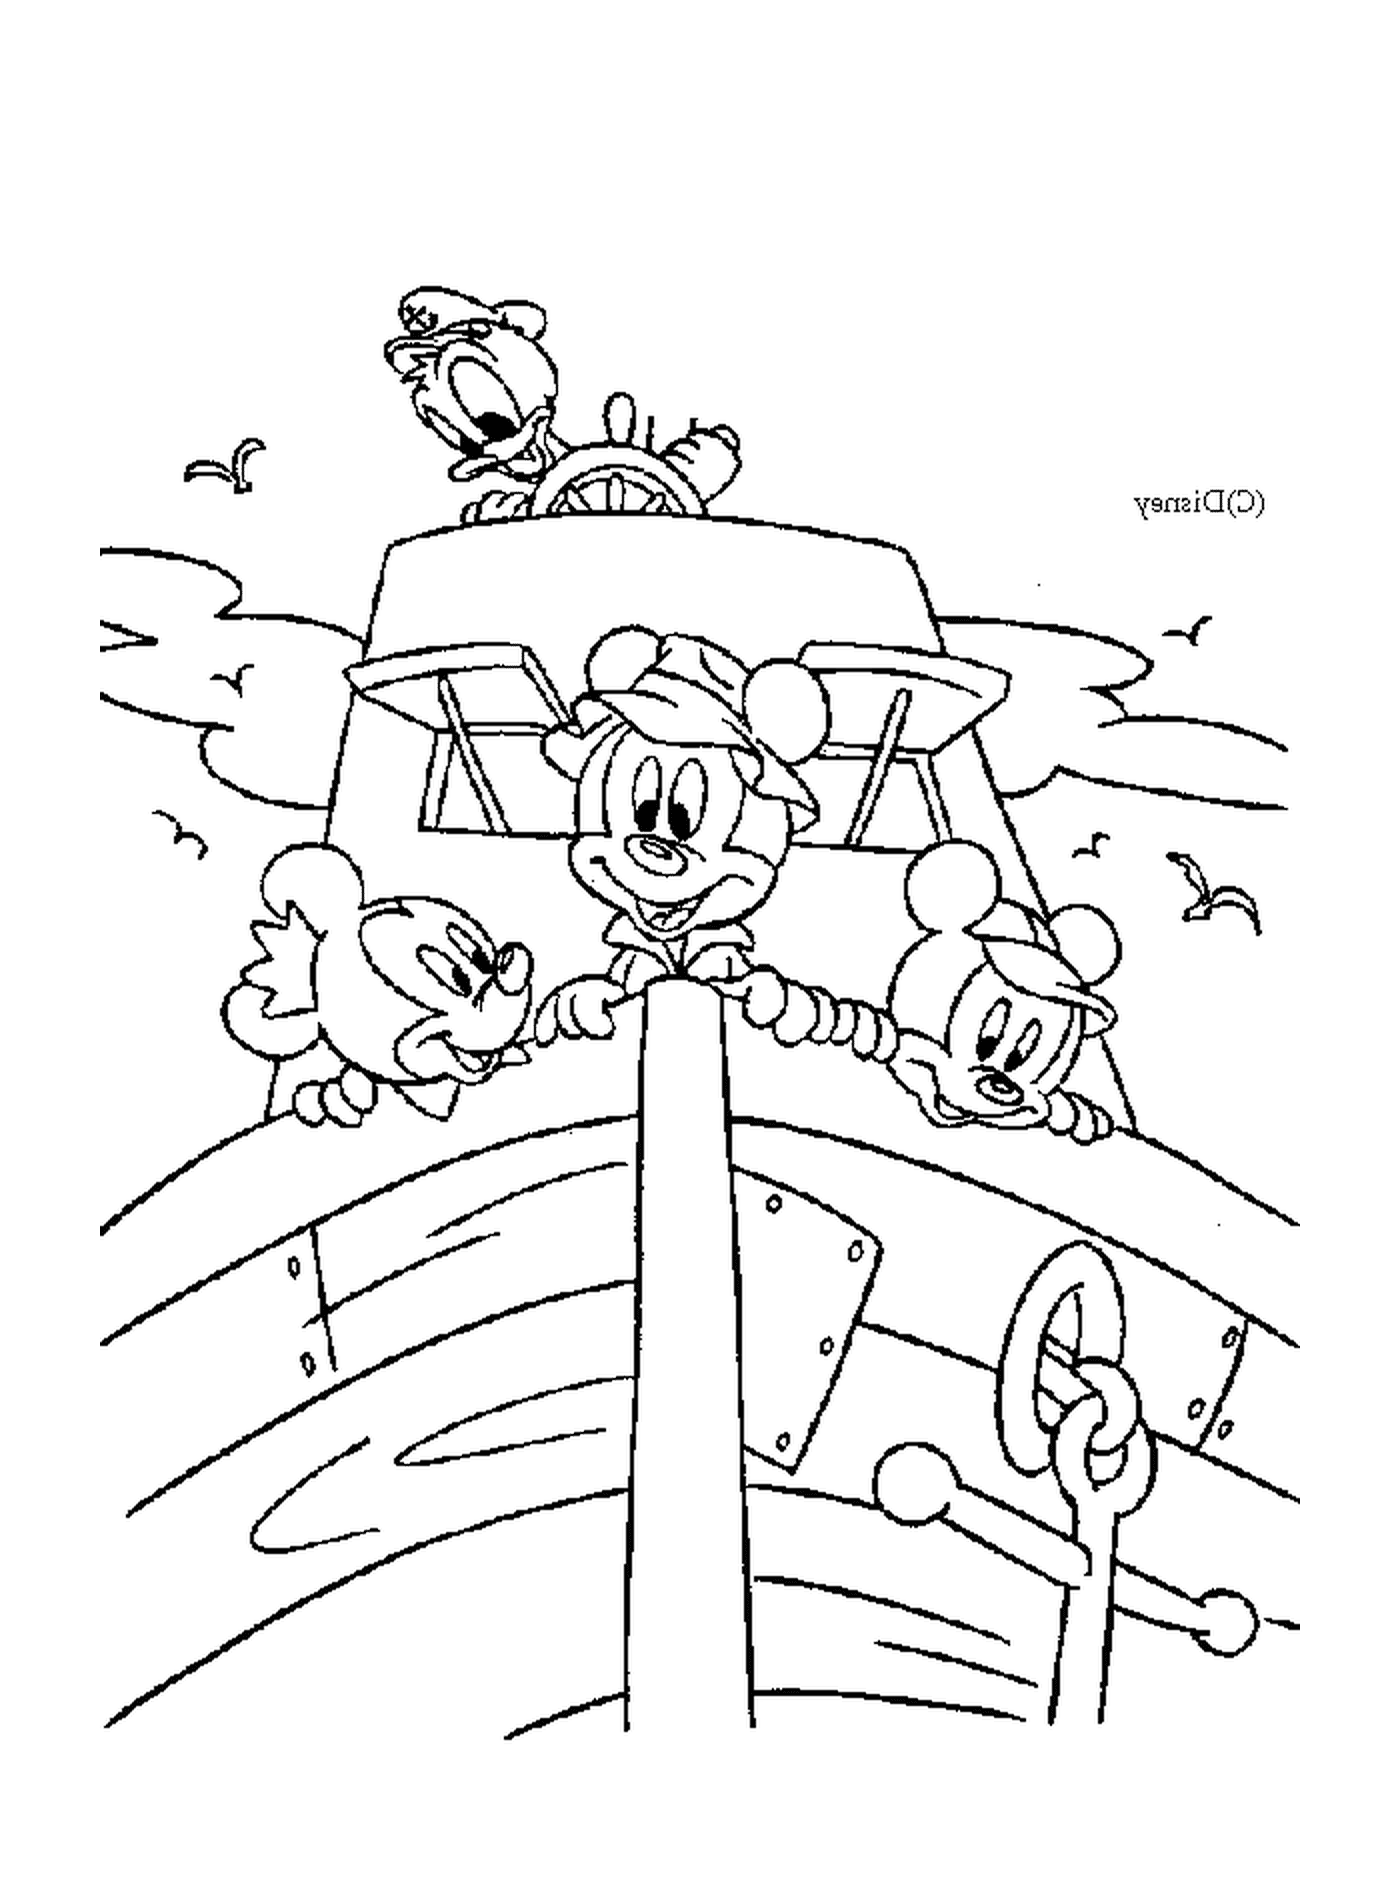 Mickey et son ami Donald sur un bateau